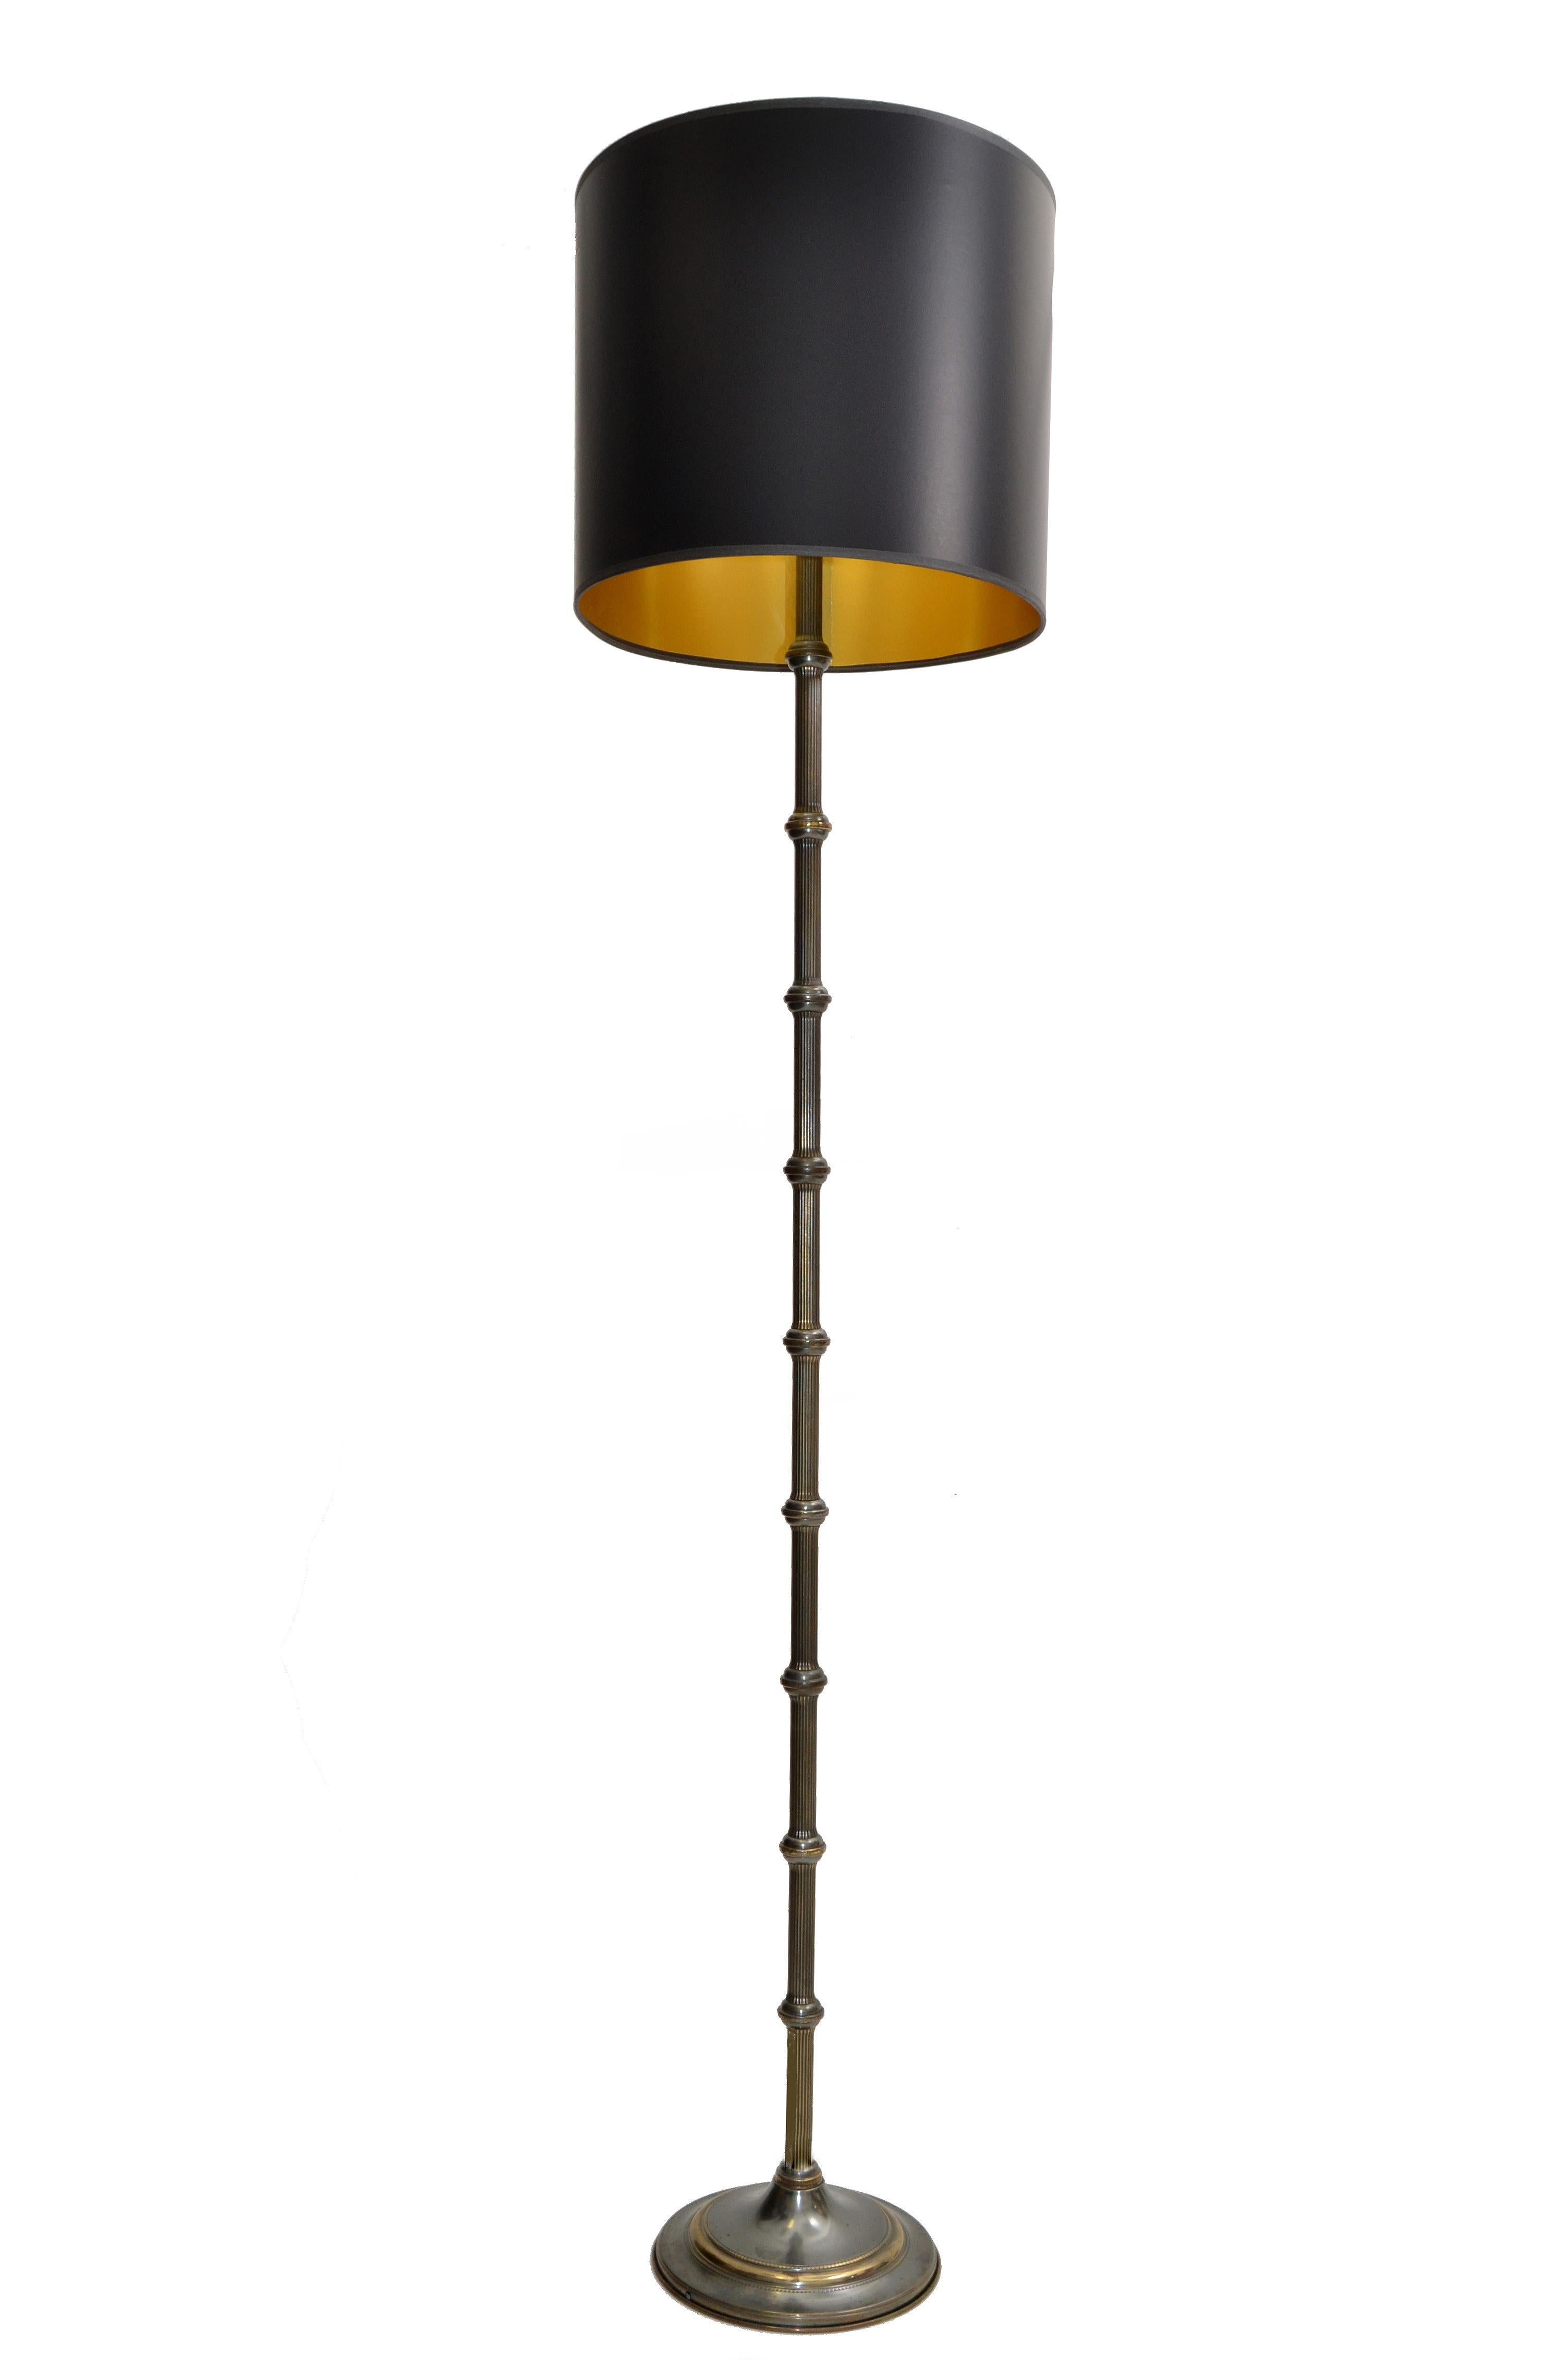 Original französische Mid-Century Modern Stehlampe aus versilberter Bronze und Messing von Maison Jansen, hergestellt in Frankreich 1950.
Funktioniert einwandfrei und nimmt eine normale Glühbirne auf.
Verkauft mit maßgeschneiderten schwarzen und